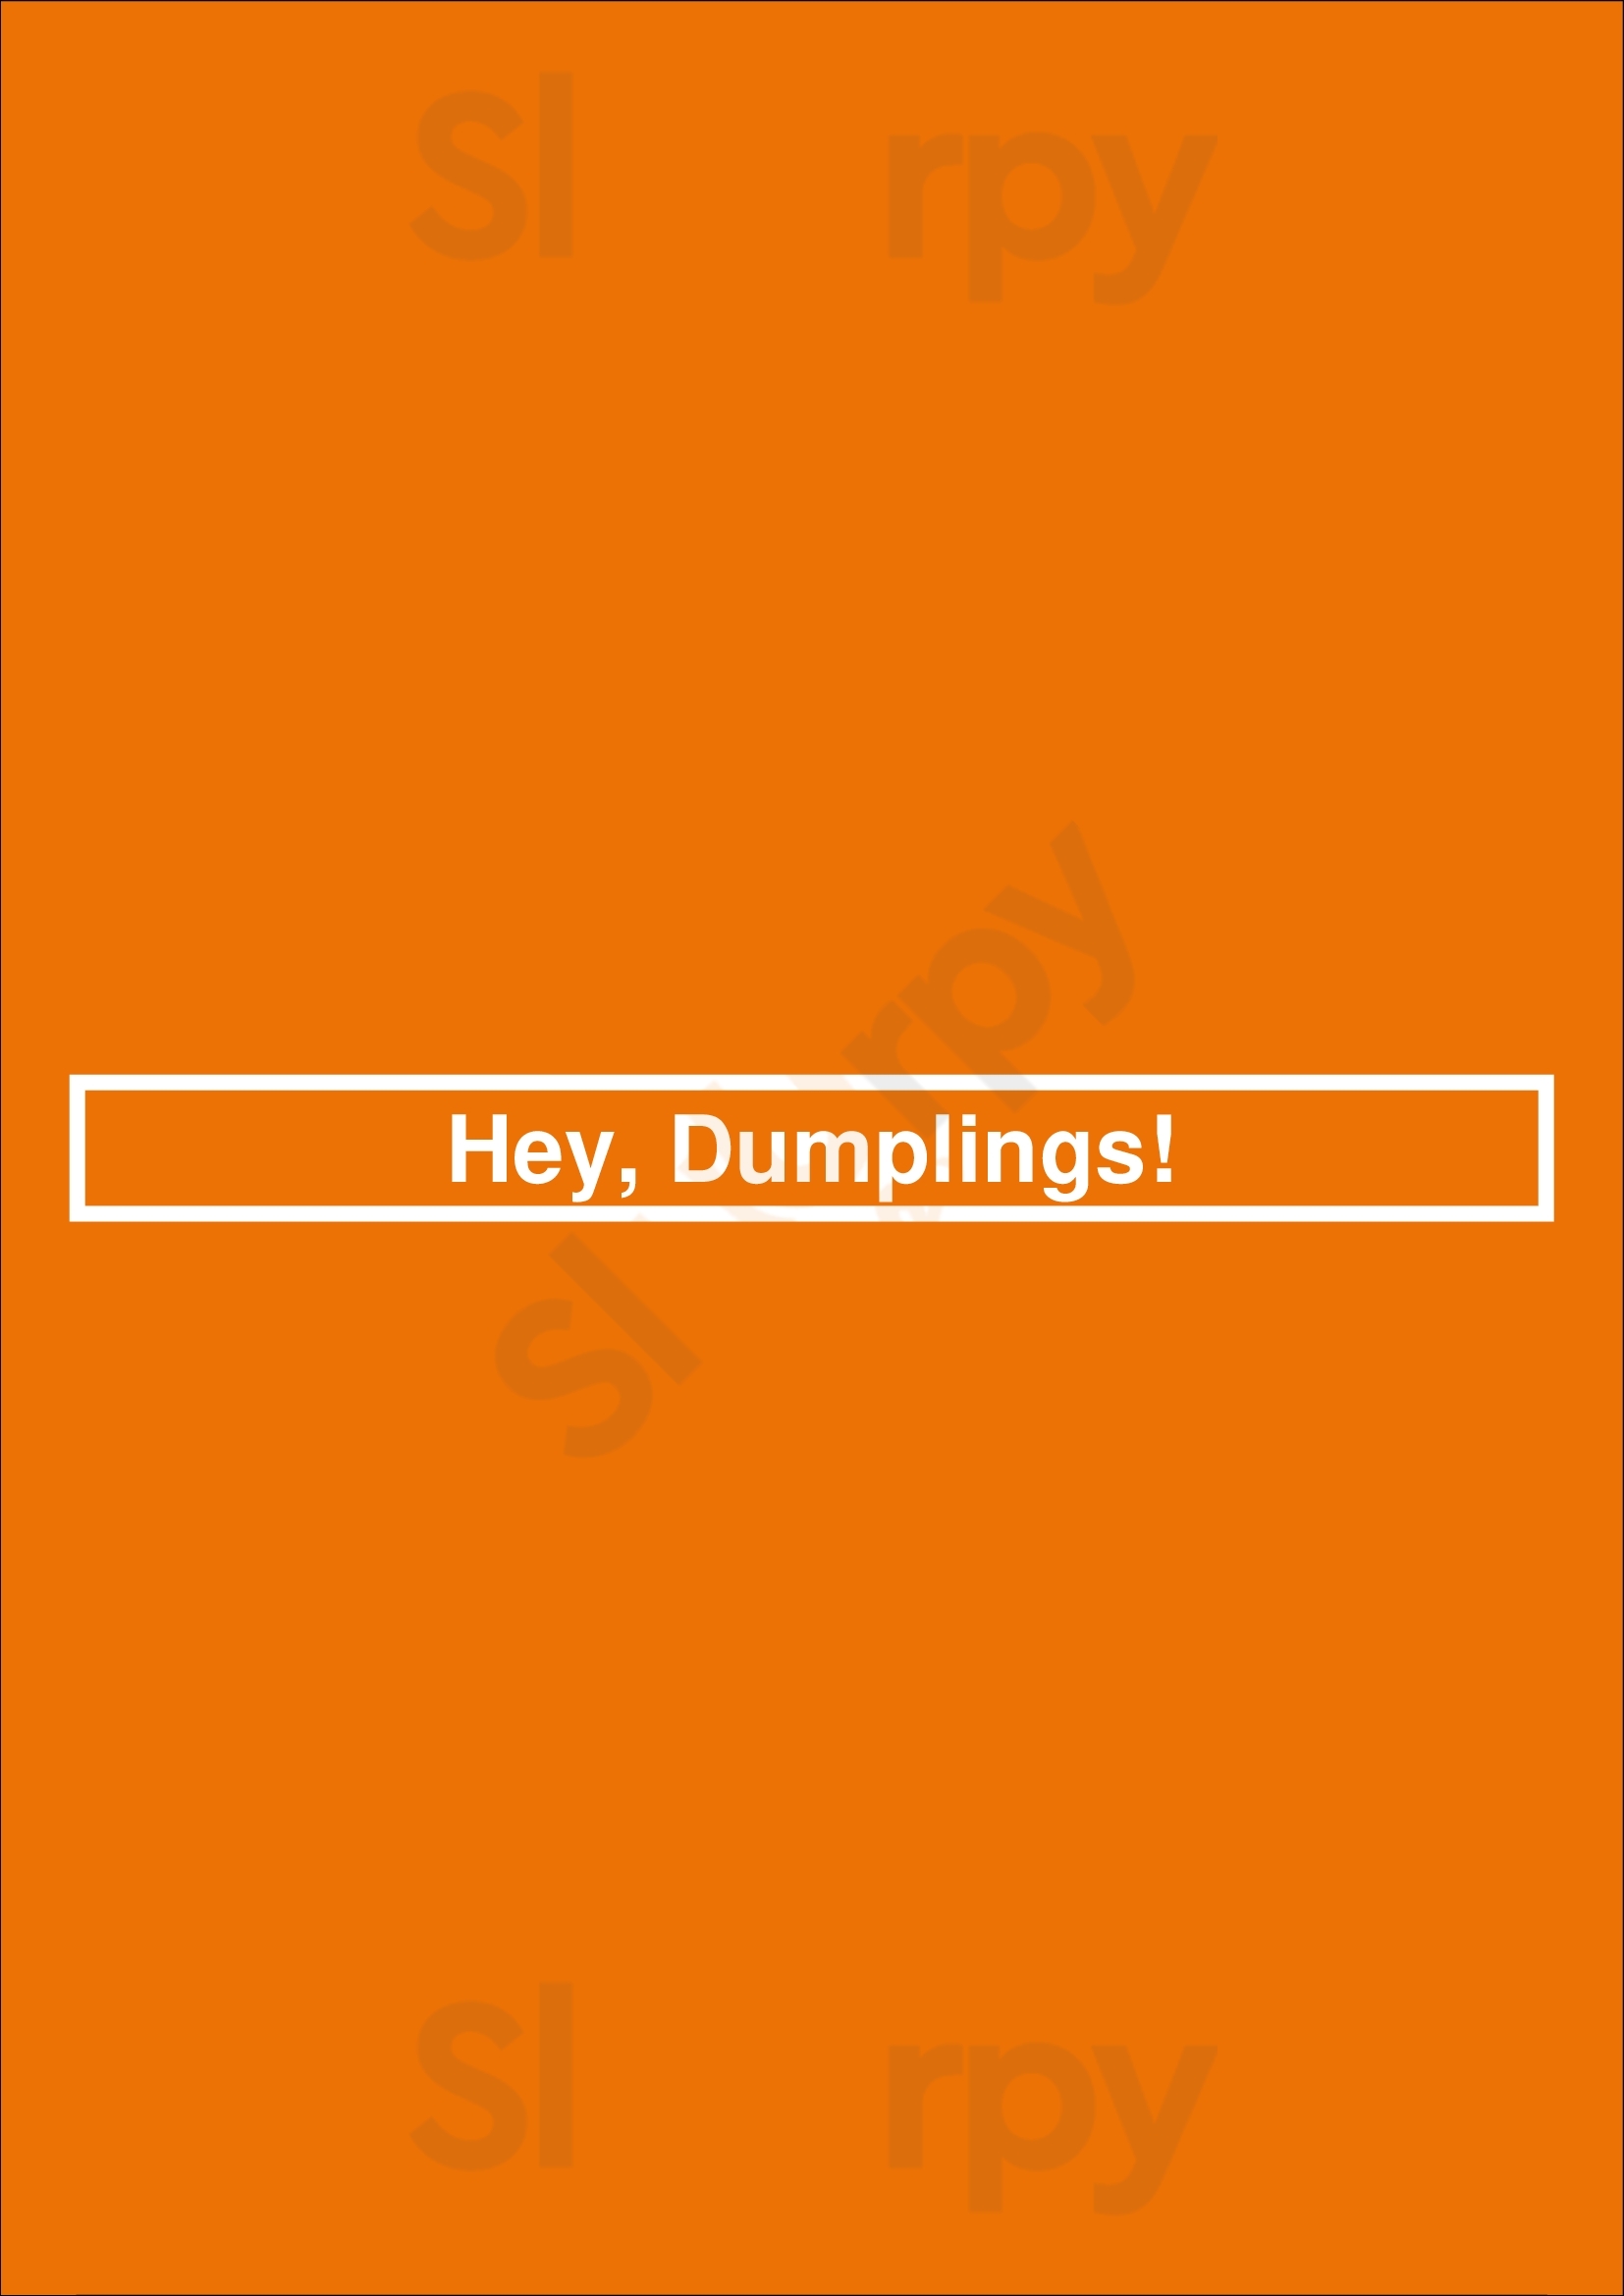 Hey, Dumplings! Vancouver Menu - 1